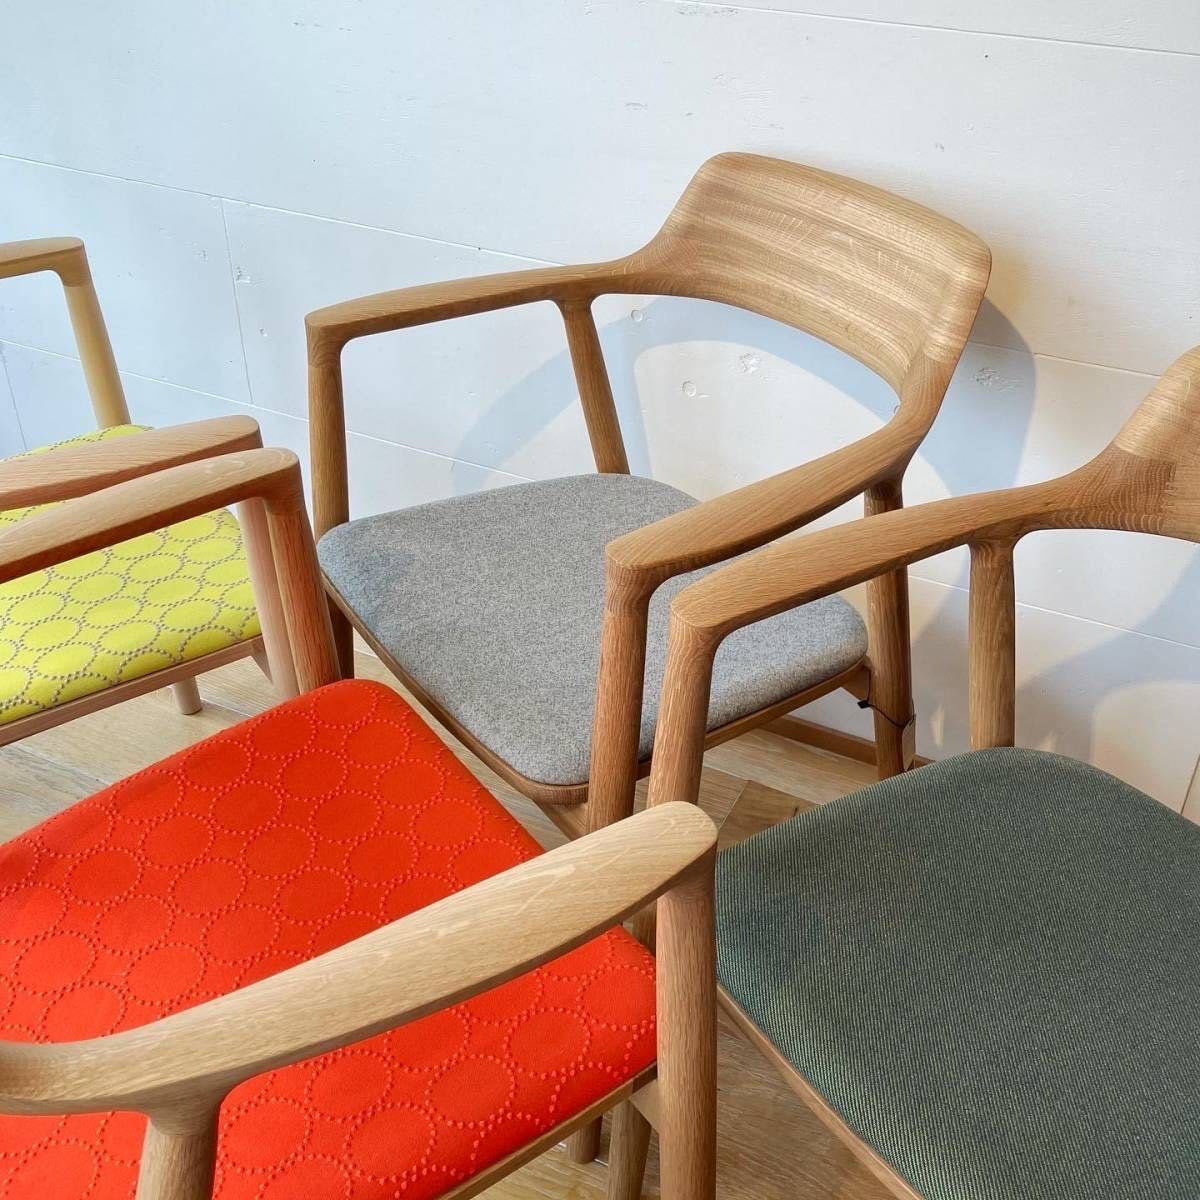 マルニ マルニ木工 HIROSHIMA アームチェア ラウンジチェア maruni 広島 椅子 MARUNI ダイニングチェア 深澤直人 北欧 _画像10